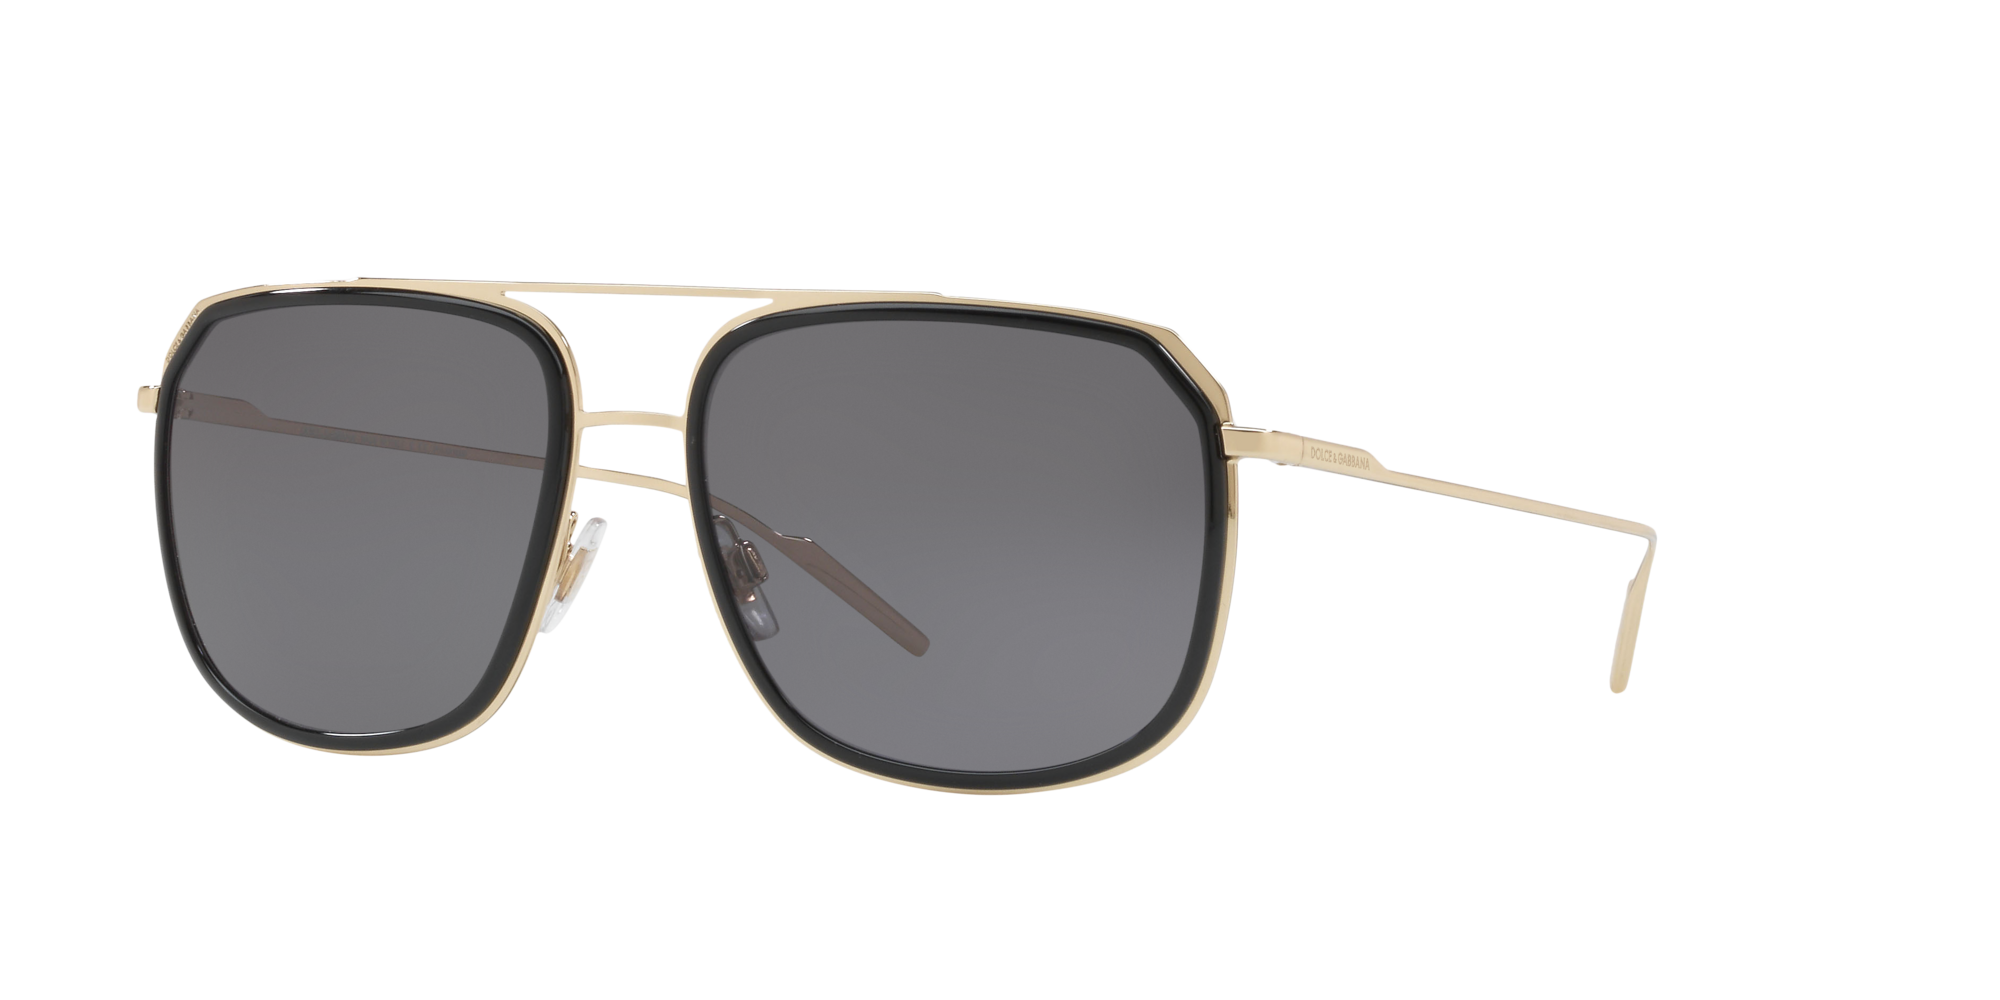 Sunglass Hut® Online Store | Sunglasses for Women, Men & Kids